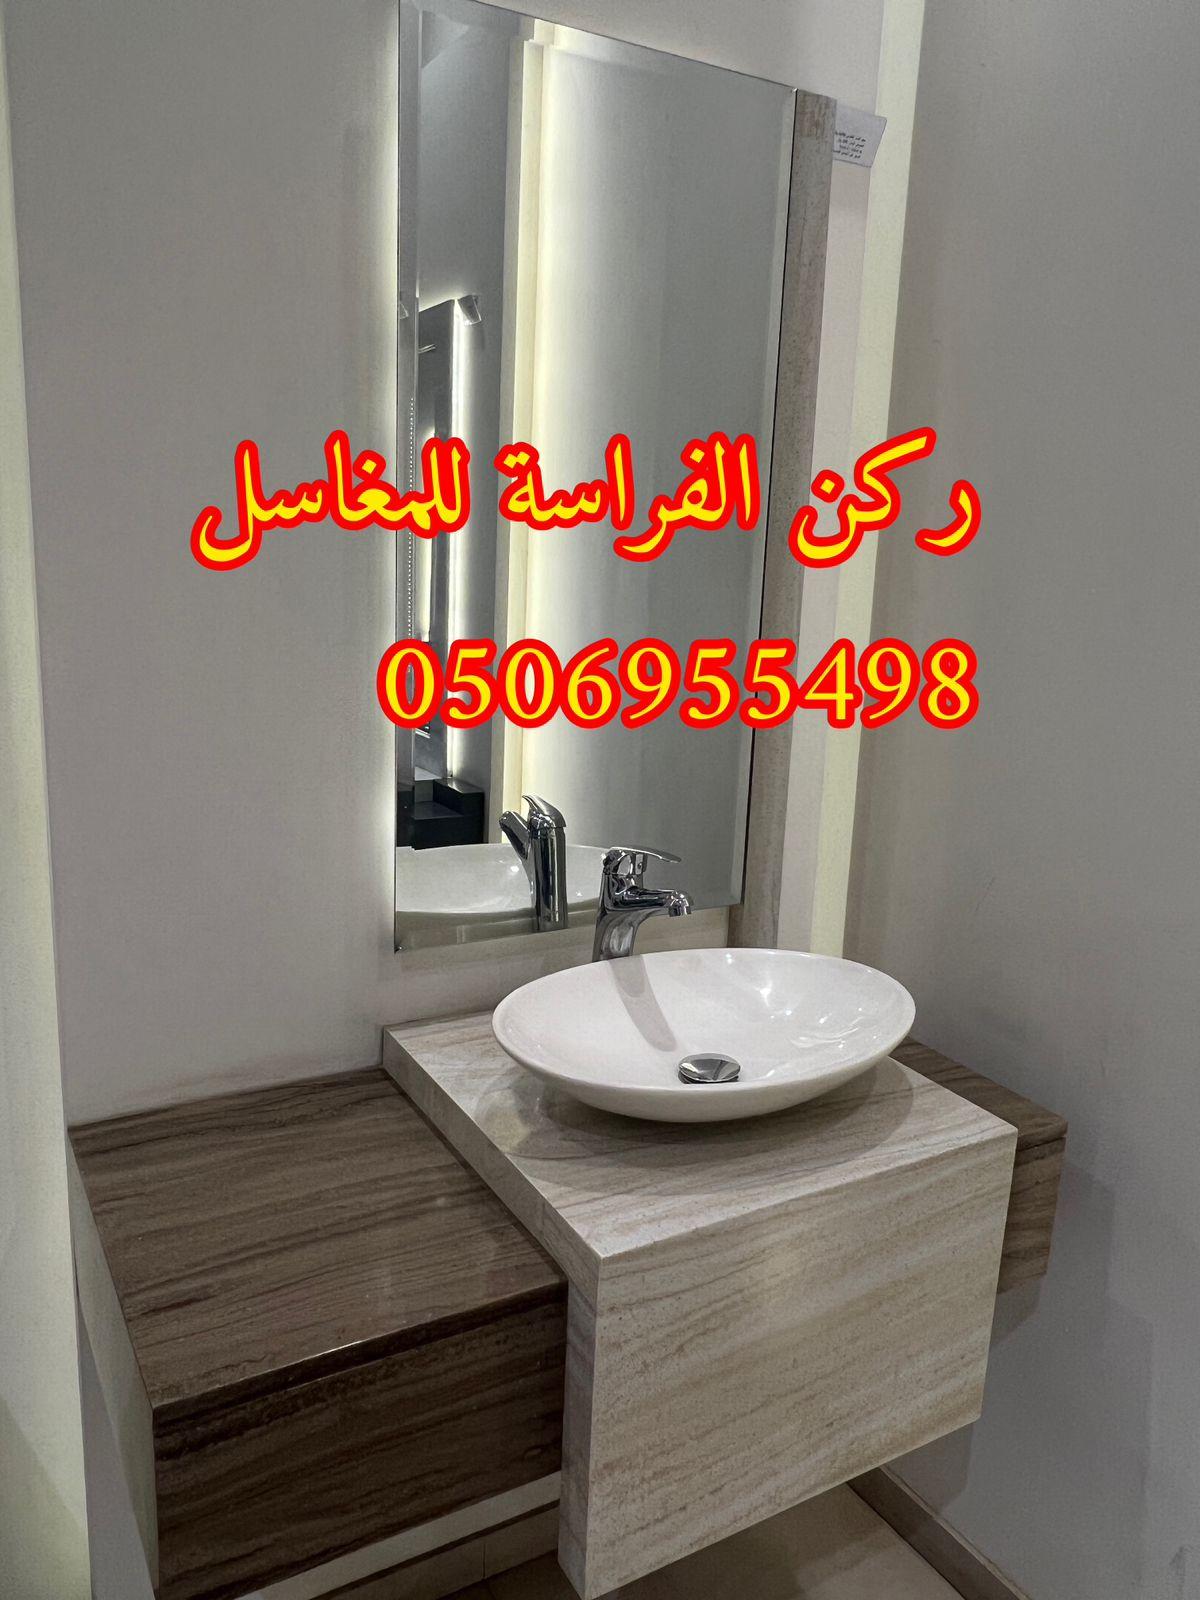 احواض مغاسل رخام في الرياض,0506955498 702894979